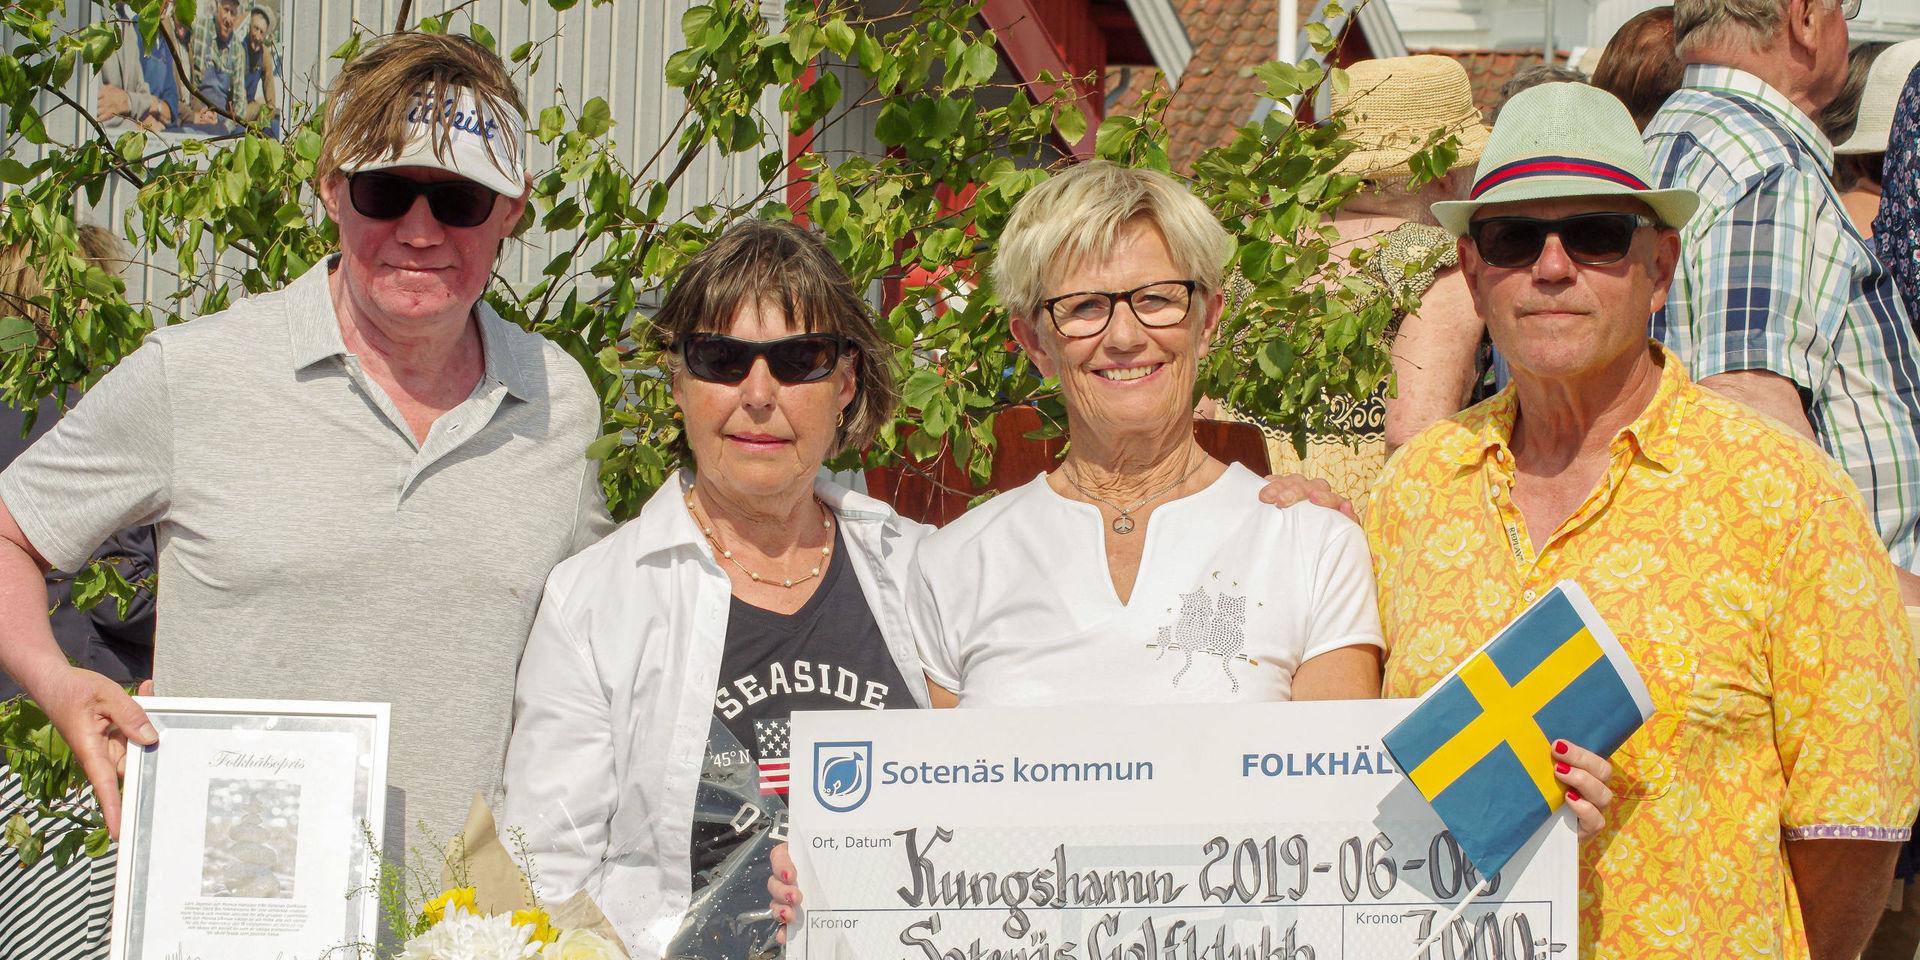 Golftränaren Lars Jagetun och Rita Hansson, Monica Hansson och Thomas Åsenhäll var glada över priset. De fyra representerar handigolfen för människror med olika funktionsnedsättningar i Sotenäs golfklubb.